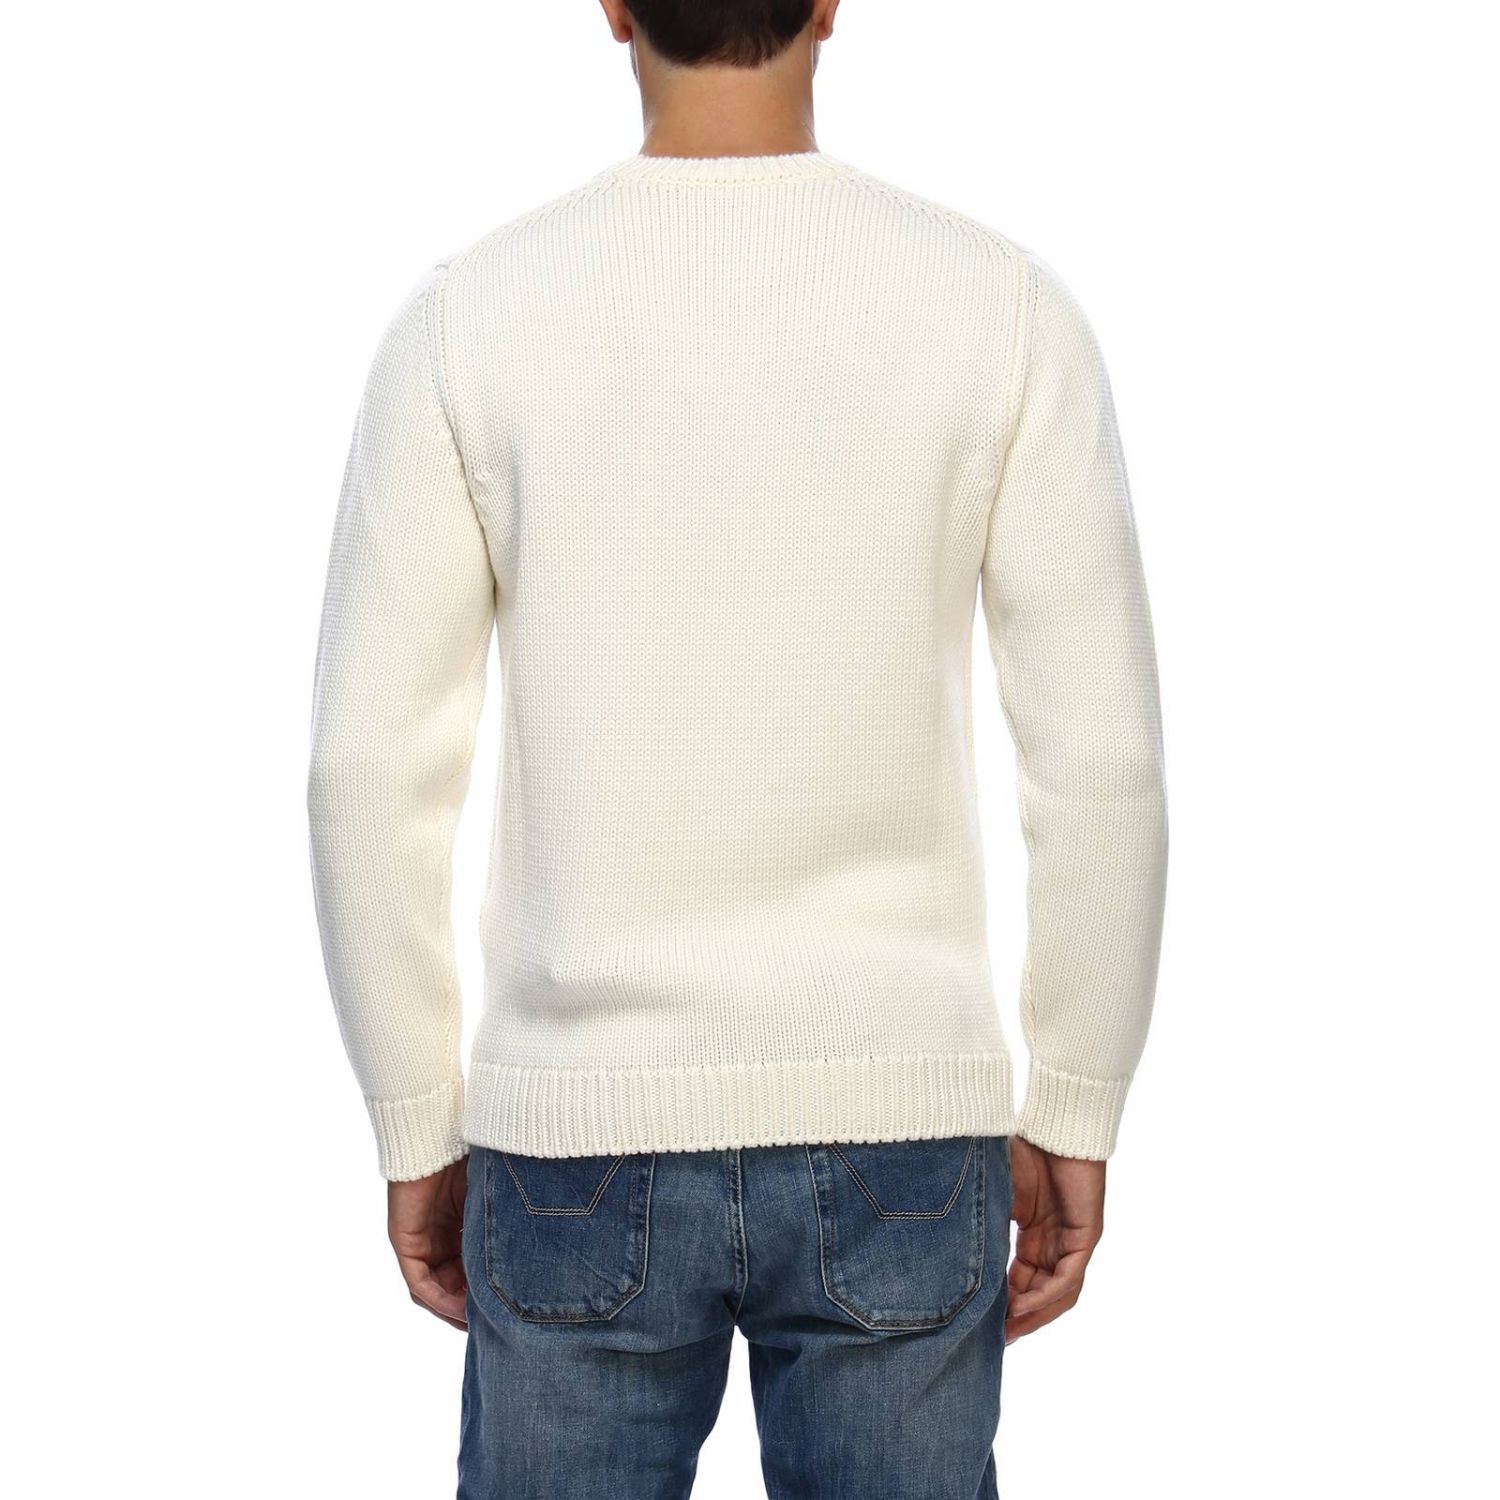 FENDI: Sweater men | Sweater Fendi Men White | Sweater Fendi FZZ387 ...